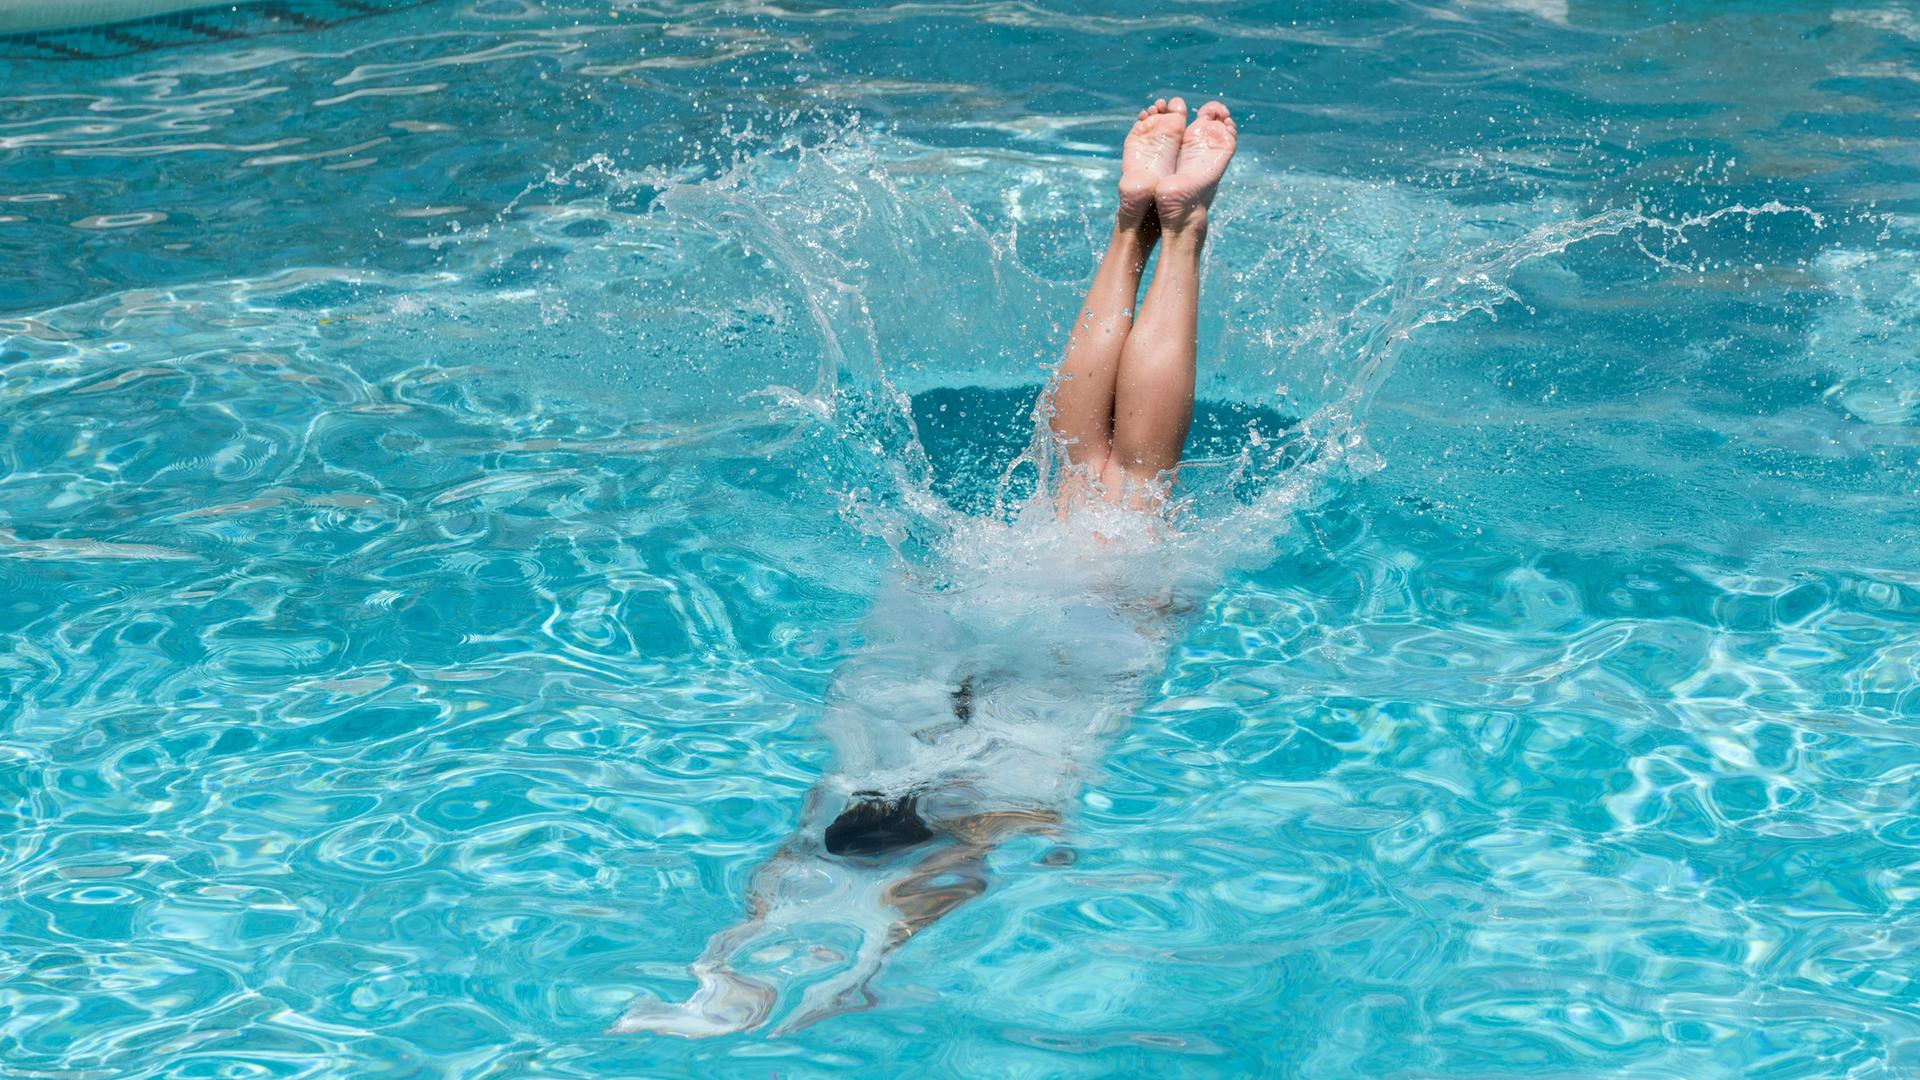 Beine kurz vorm Eintauchen ins Wasser, nach dem Kopfsprung in einen Pool. 